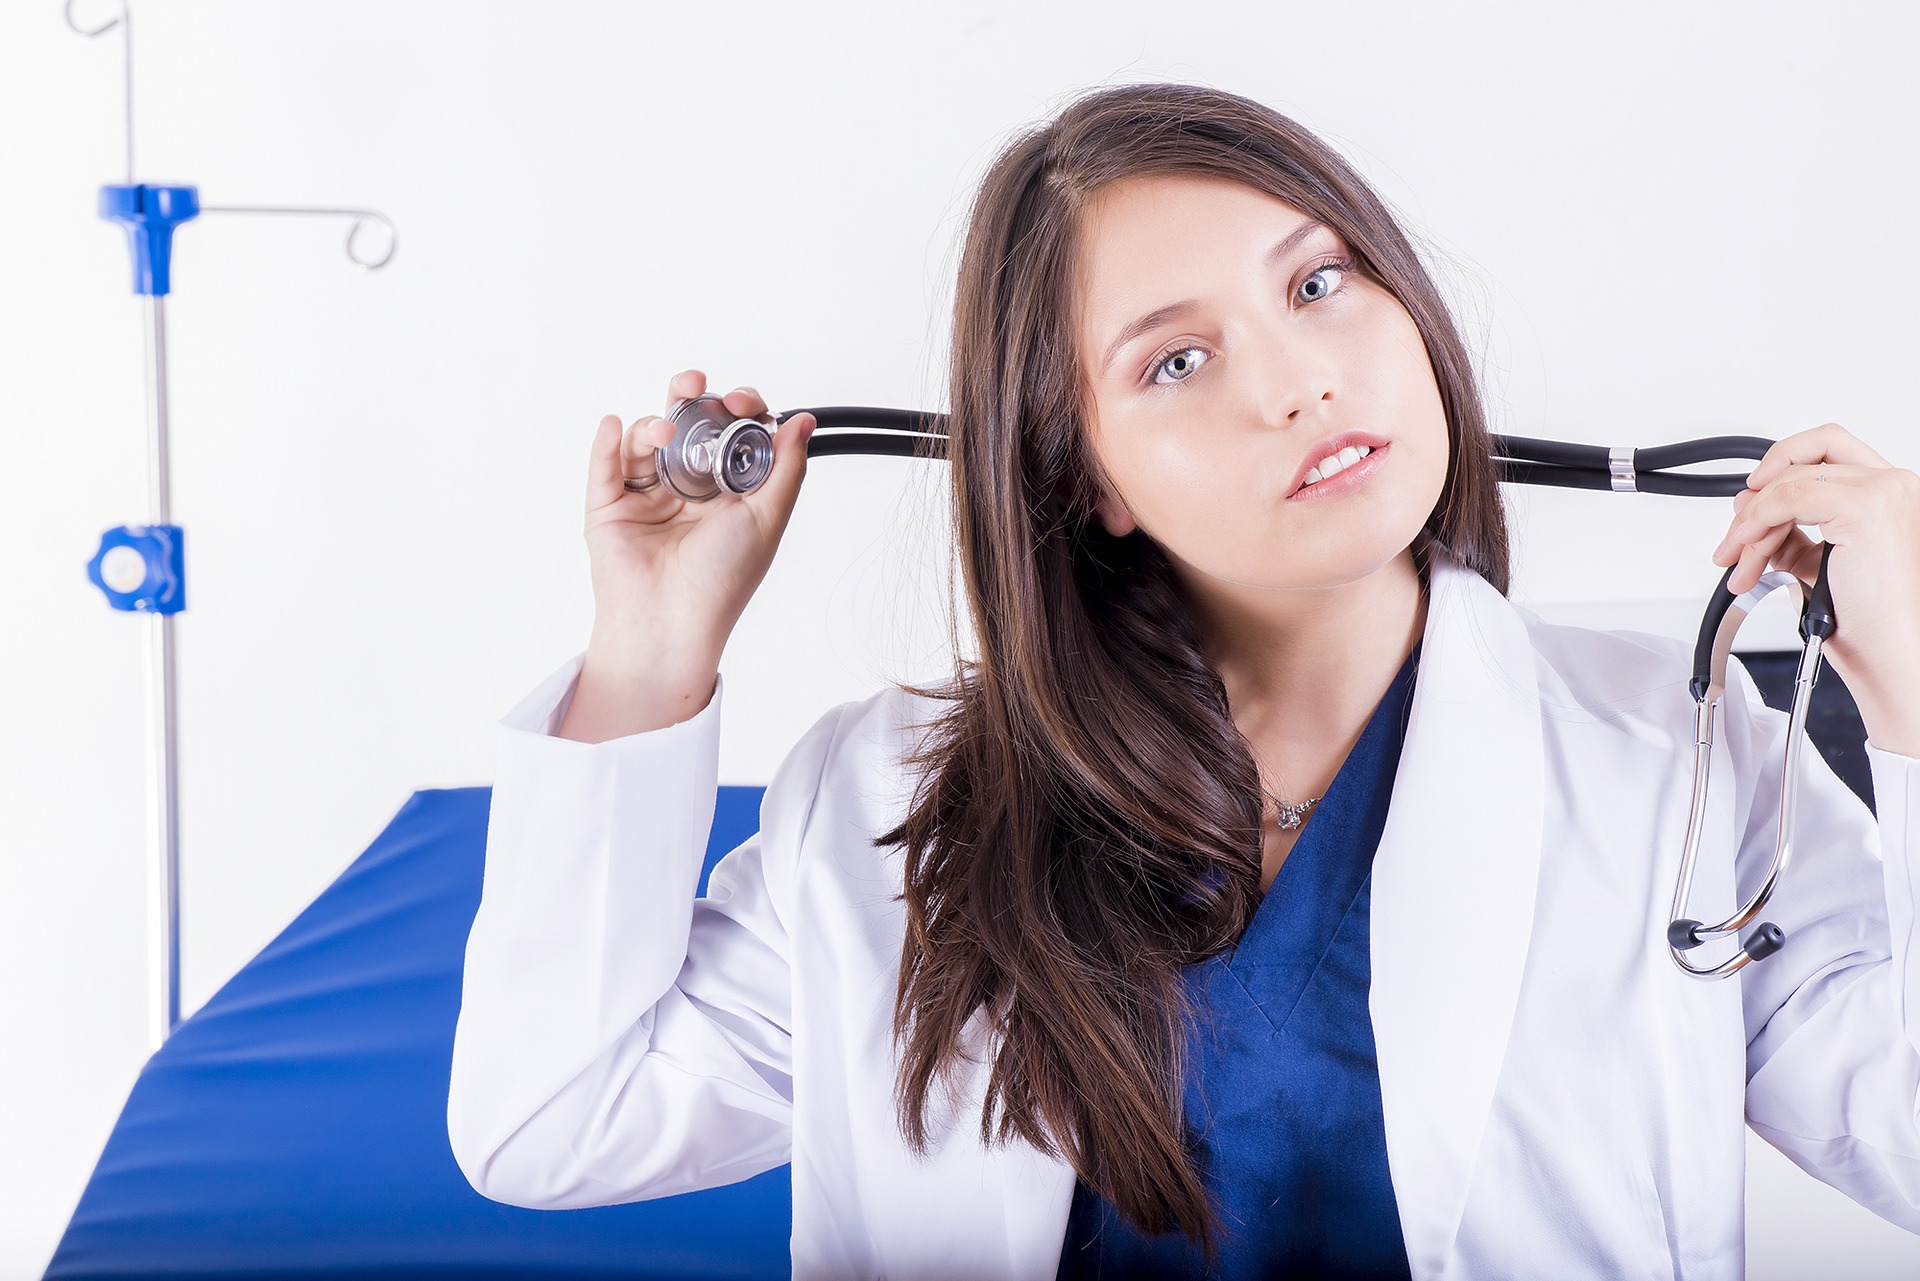 『看護師のための失敗しない転職』とおすすめ転職サイト